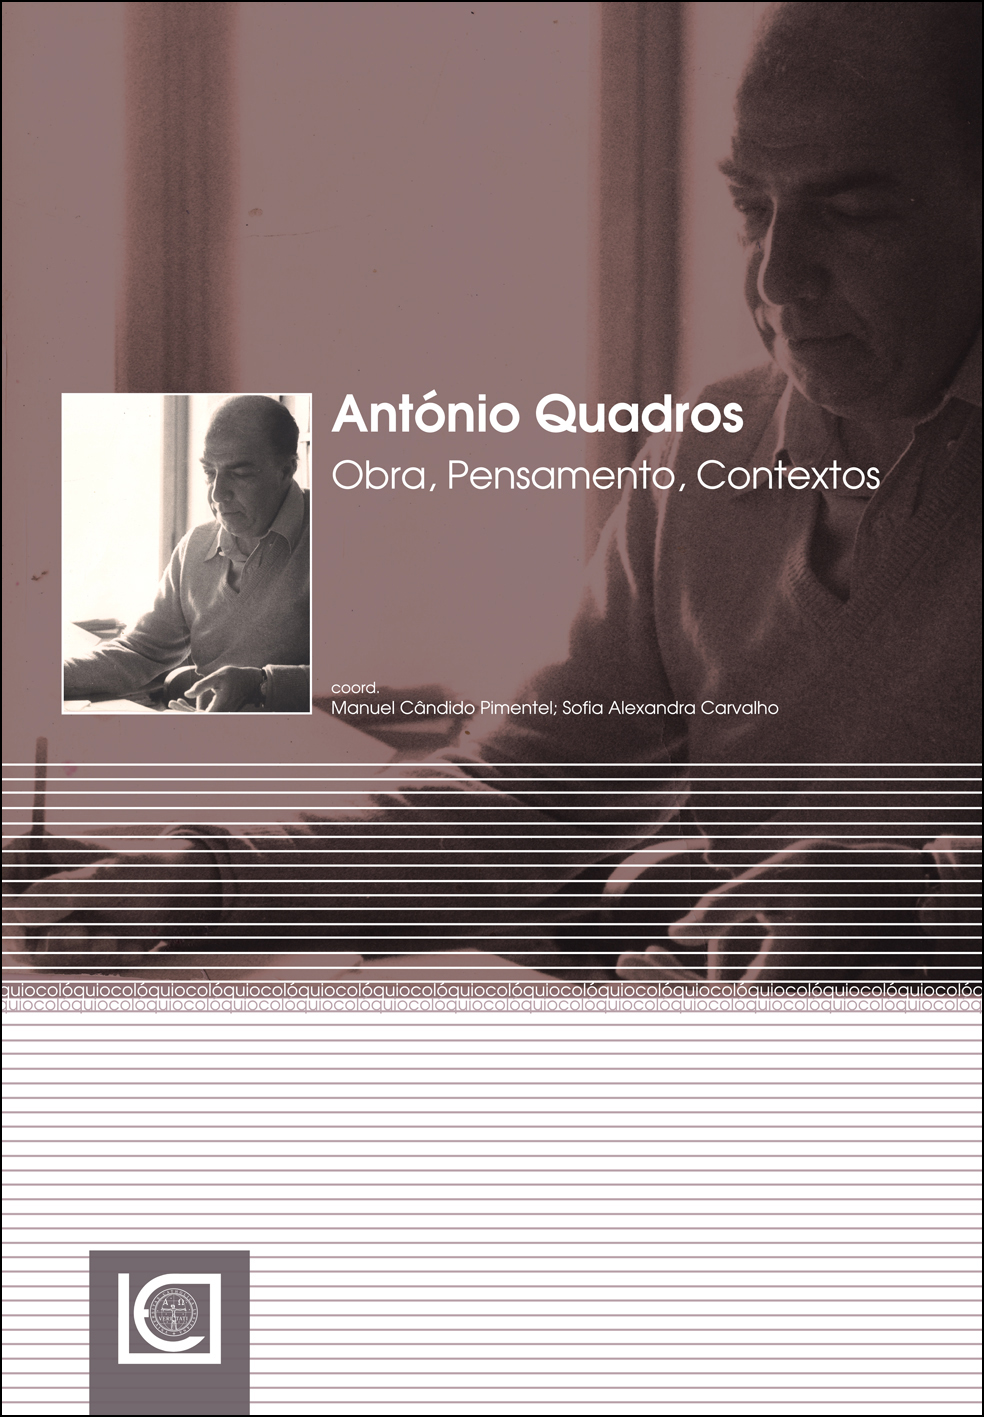 AntonioQuadros